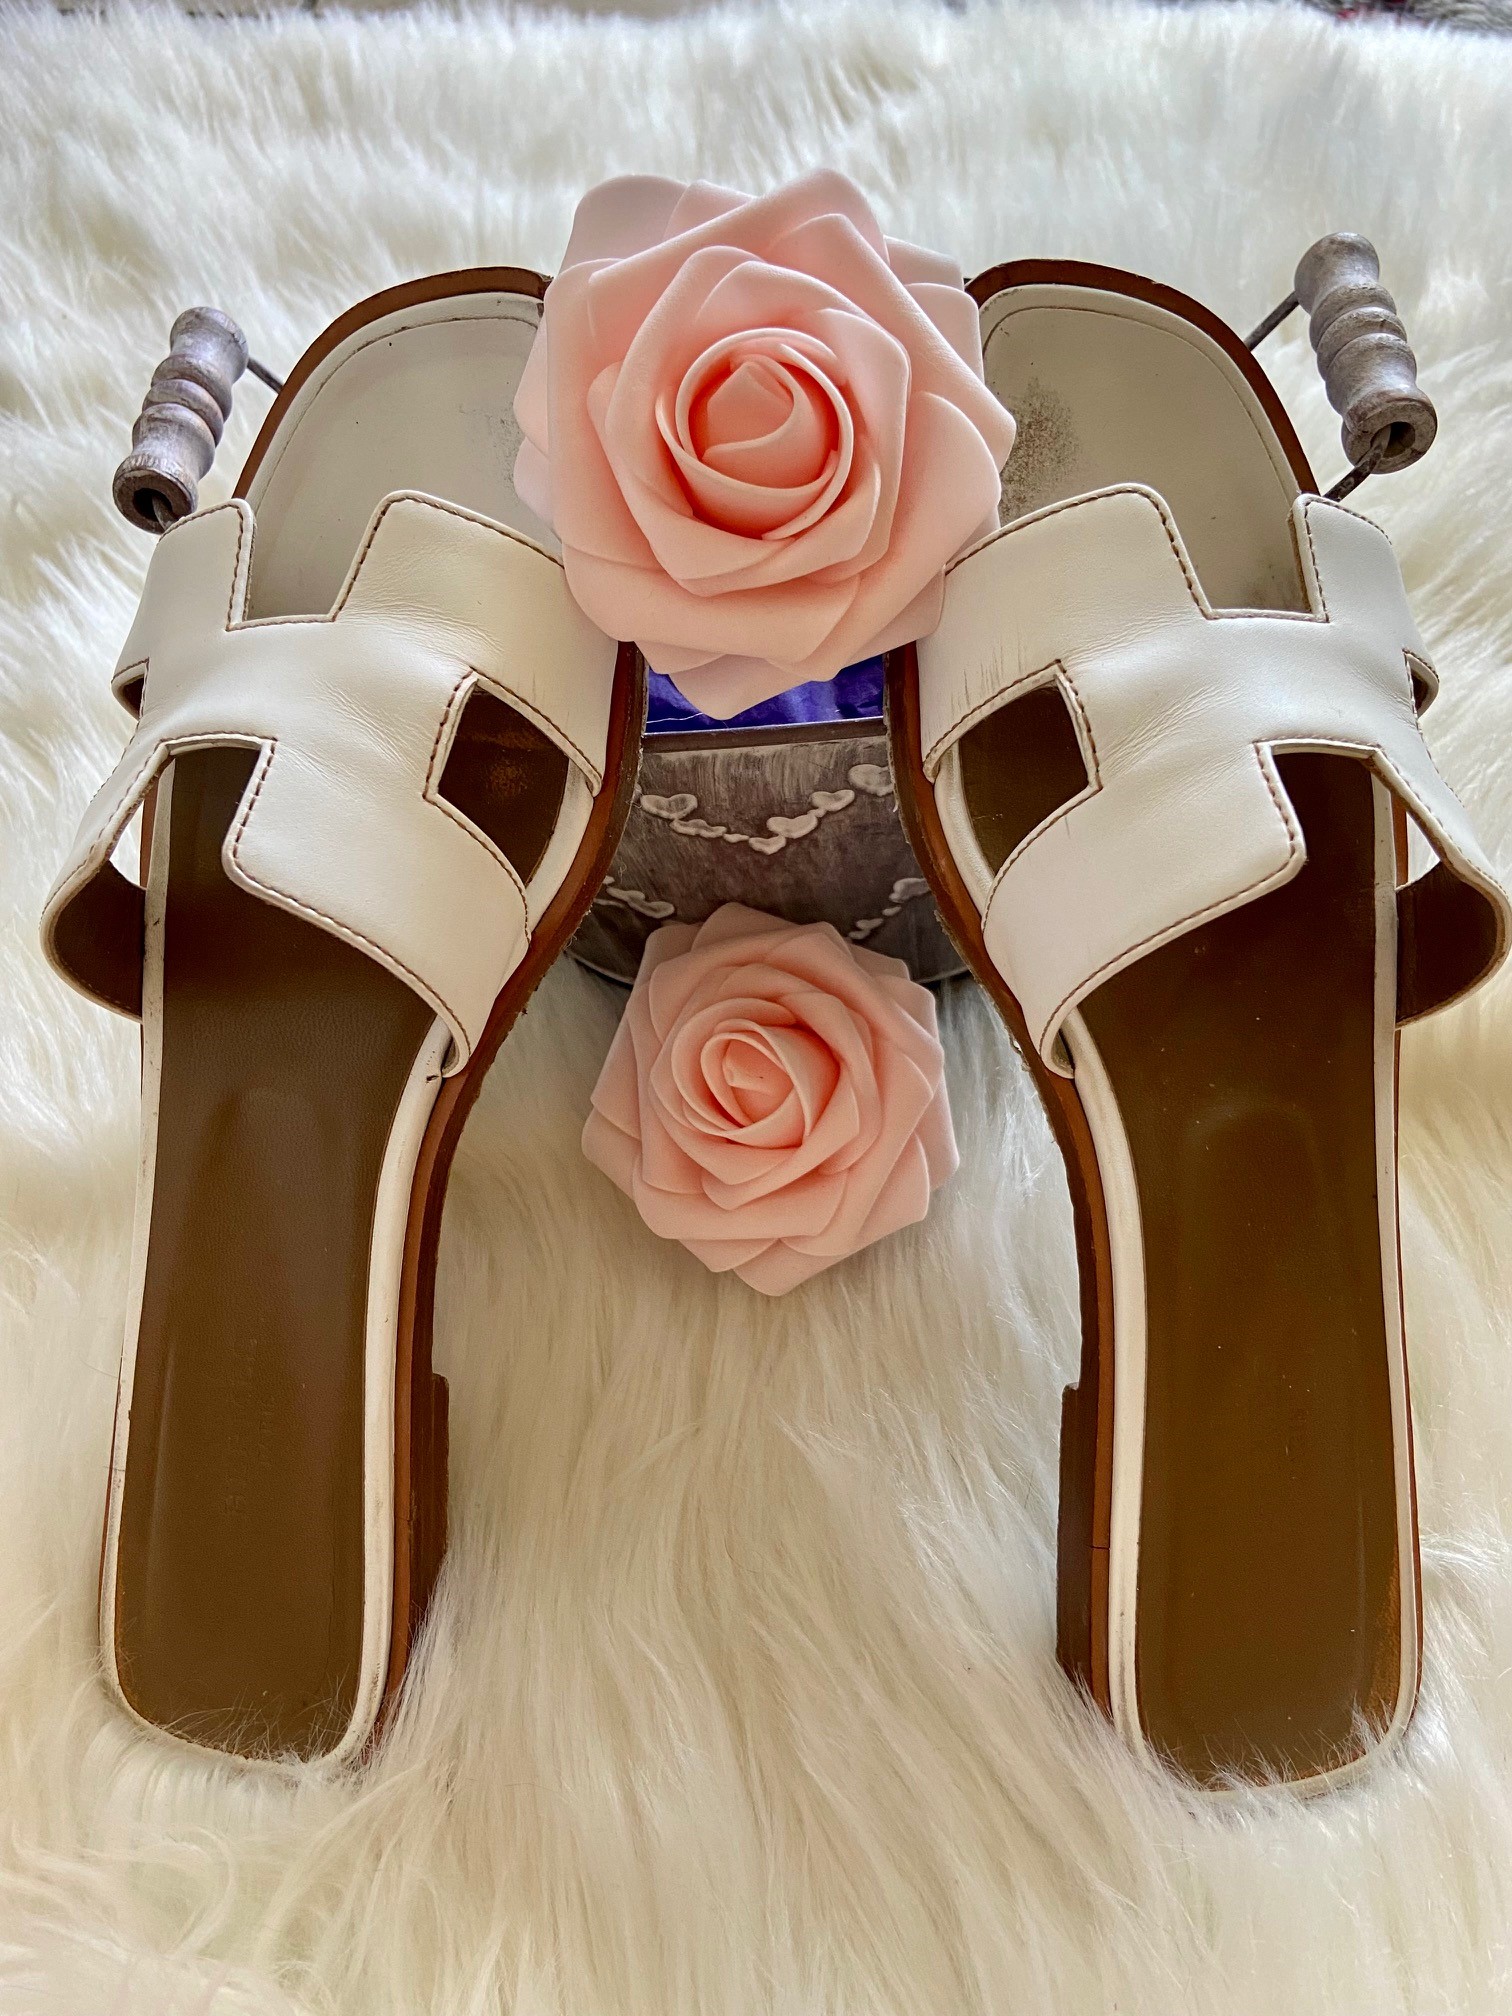 Hermès Women's Oran Sandal